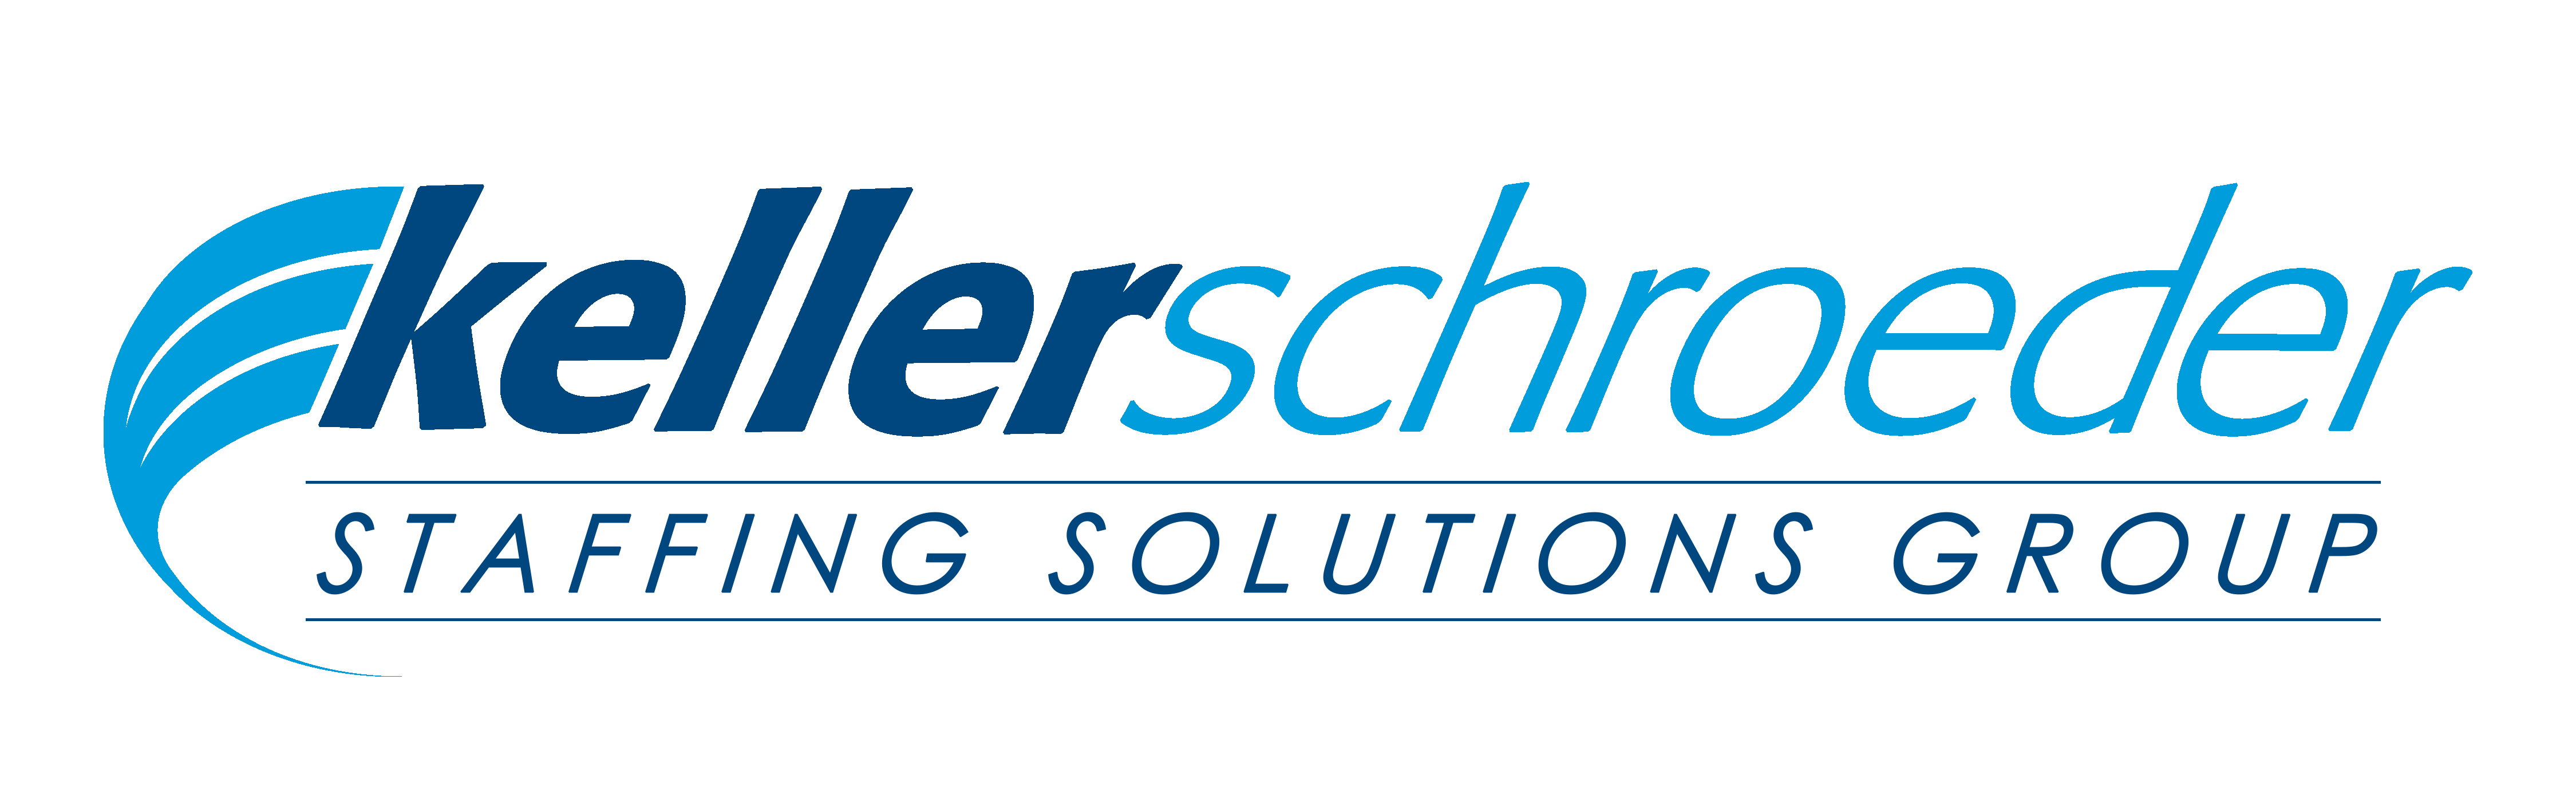 Keller Schroeder Staffing Solutions Group